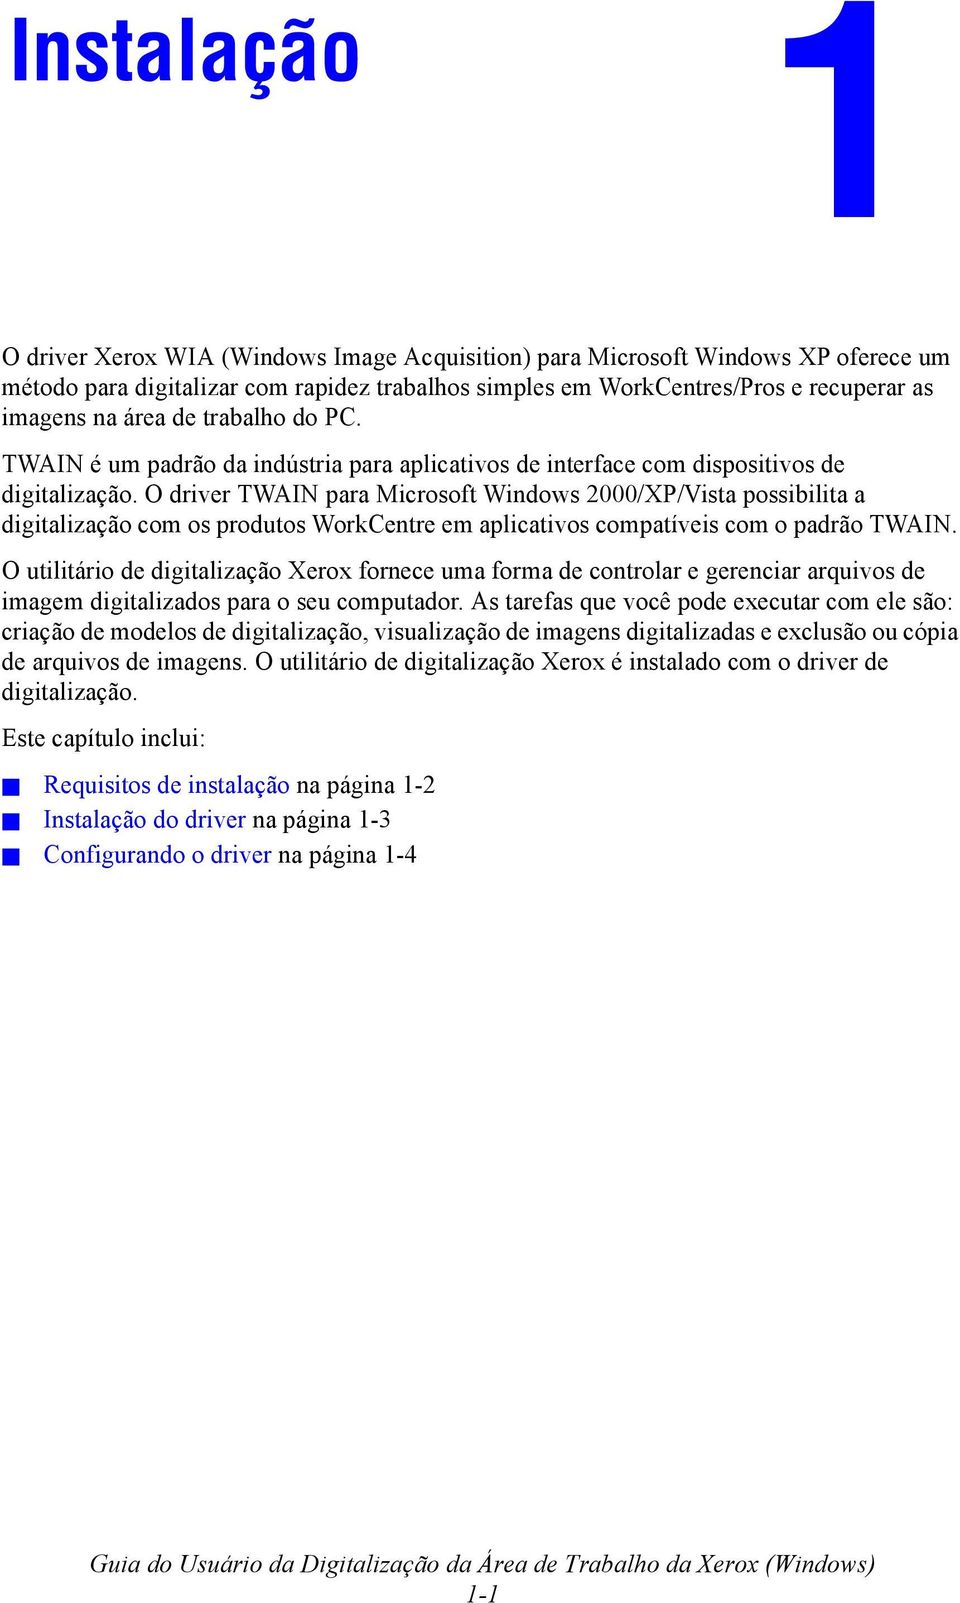 O driver TWAIN para Microsoft Windows 2000/XP/Vista possibilita a digitalização com os produtos WorkCentre em aplicativos compatíveis com o padrão TWAIN.